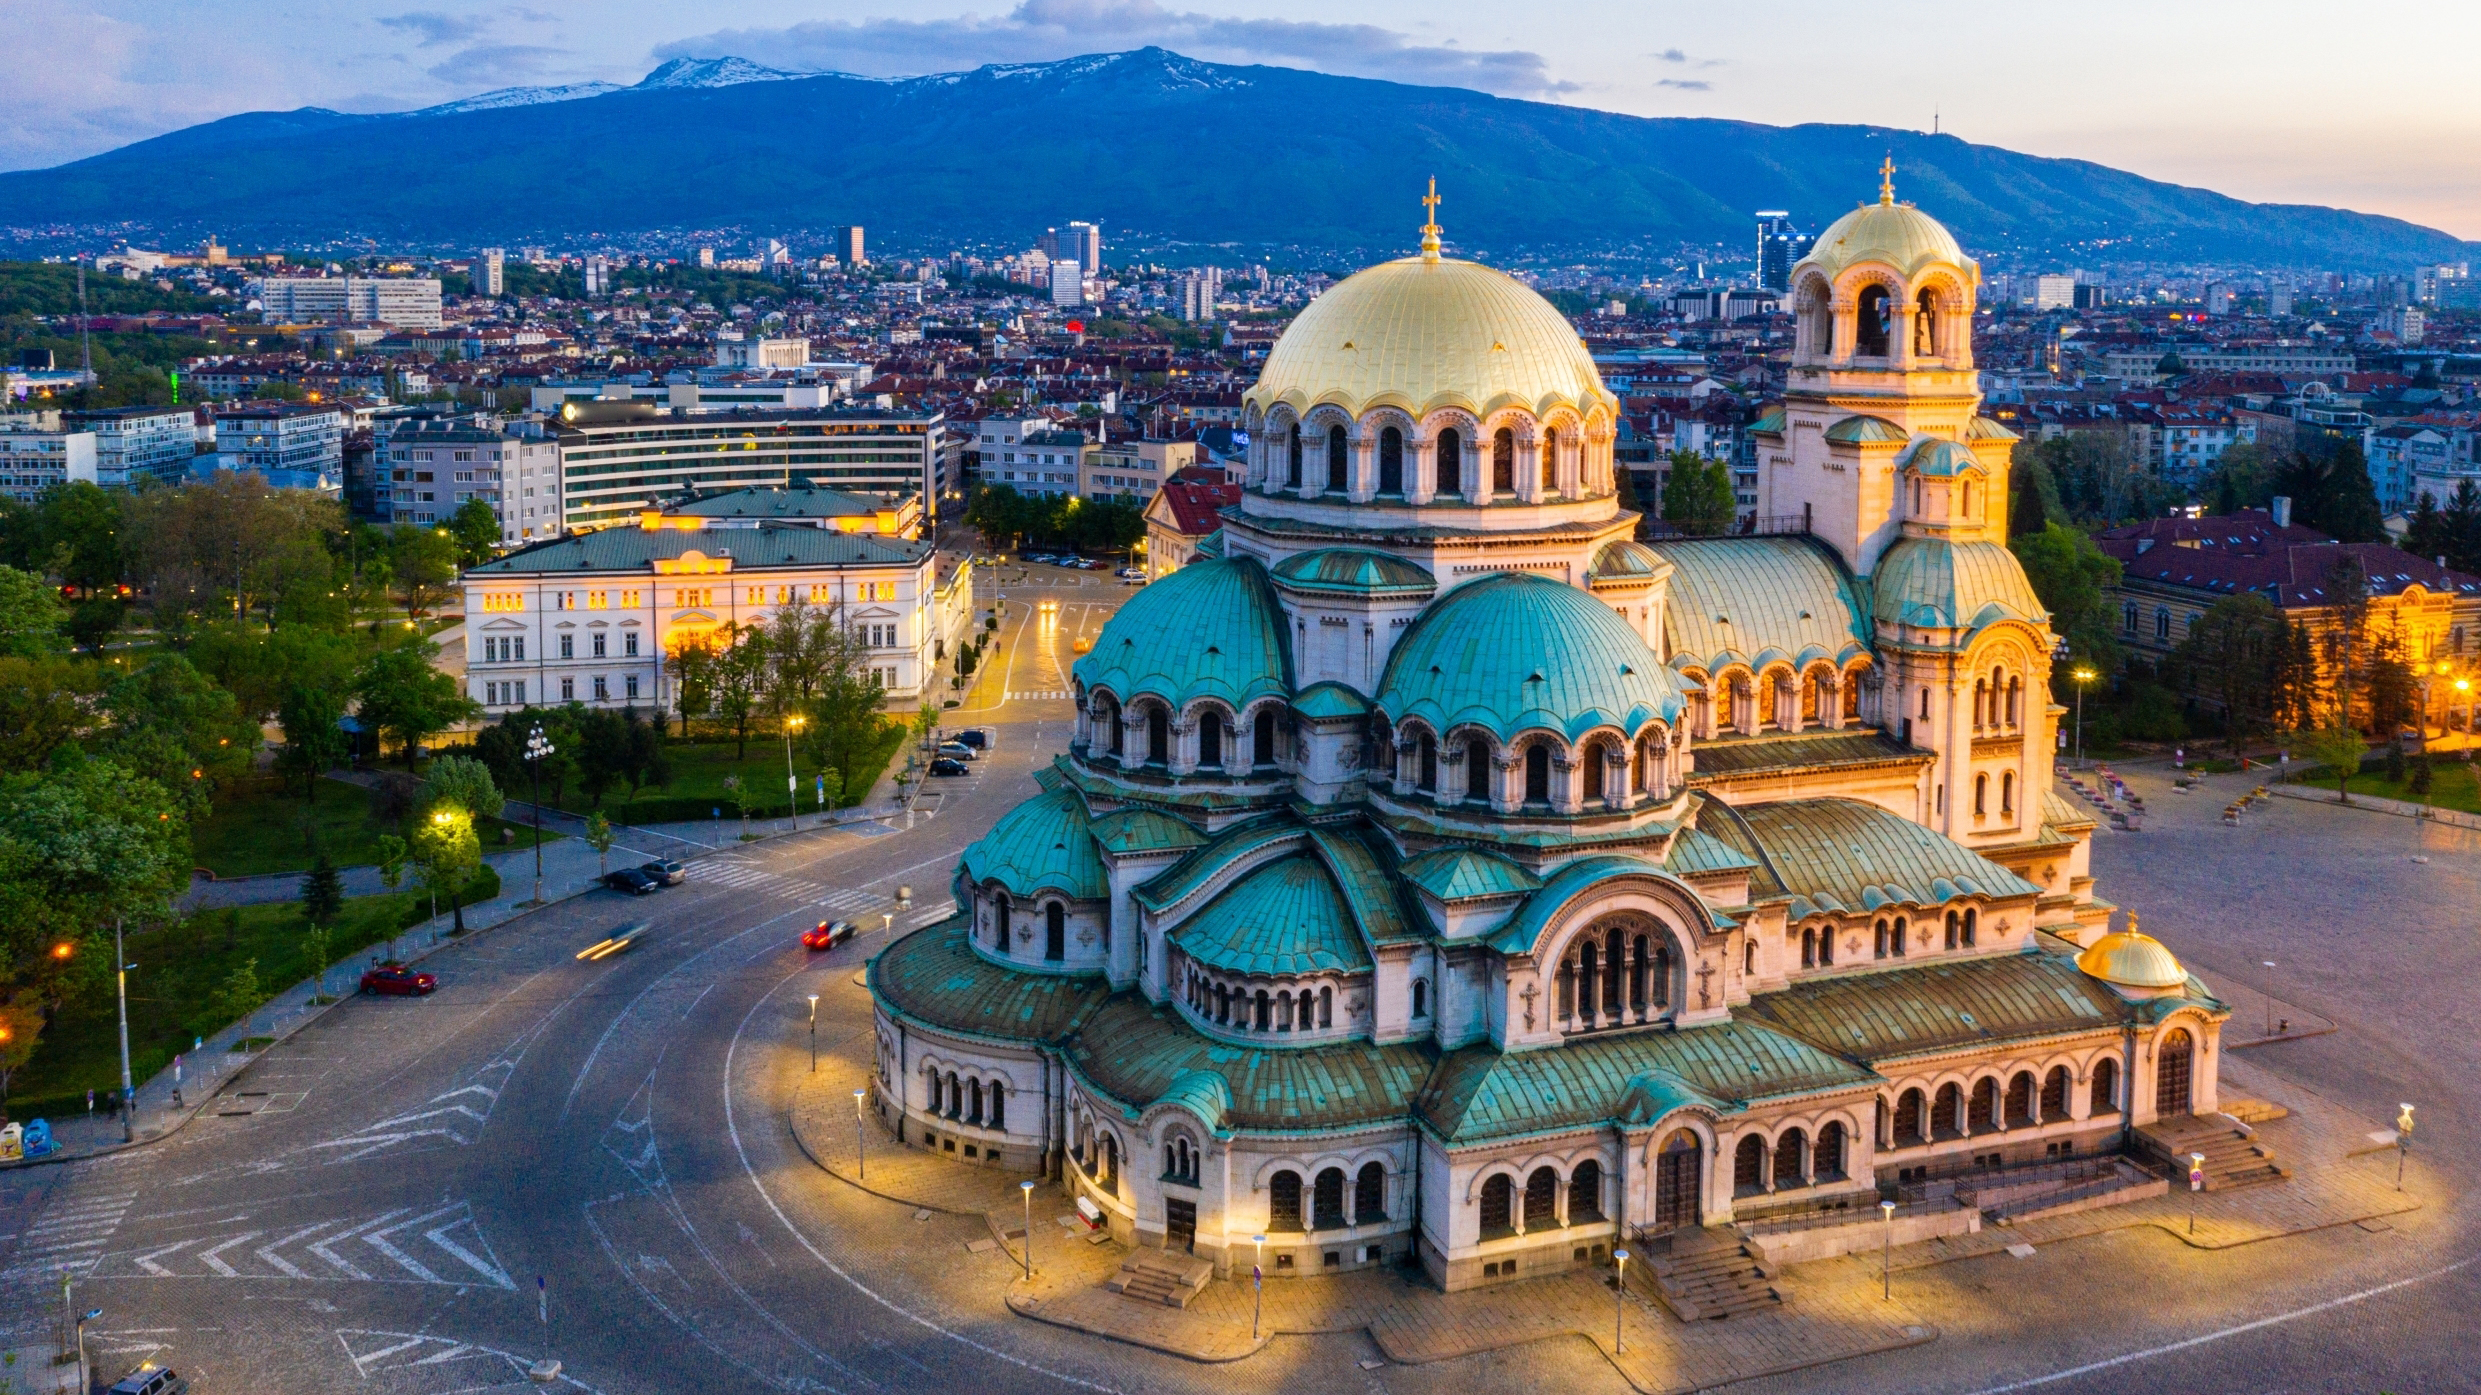 София, болгарская столица, куда иностранцы могут переехать по беженству